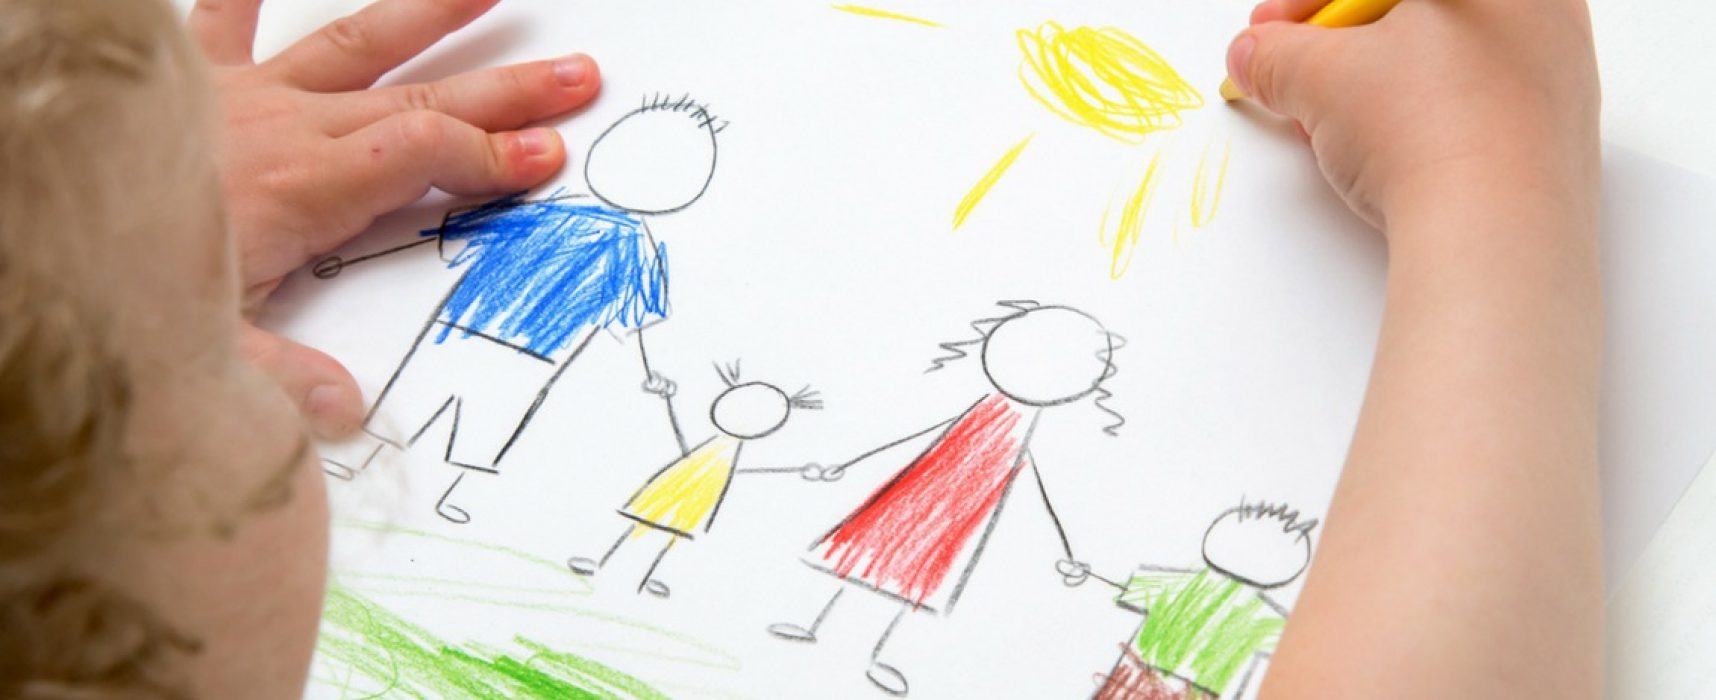 Comune di Bisceglie, concorso di disegno “Contagio di colori” per bimbi dai 6 ai 10 anni